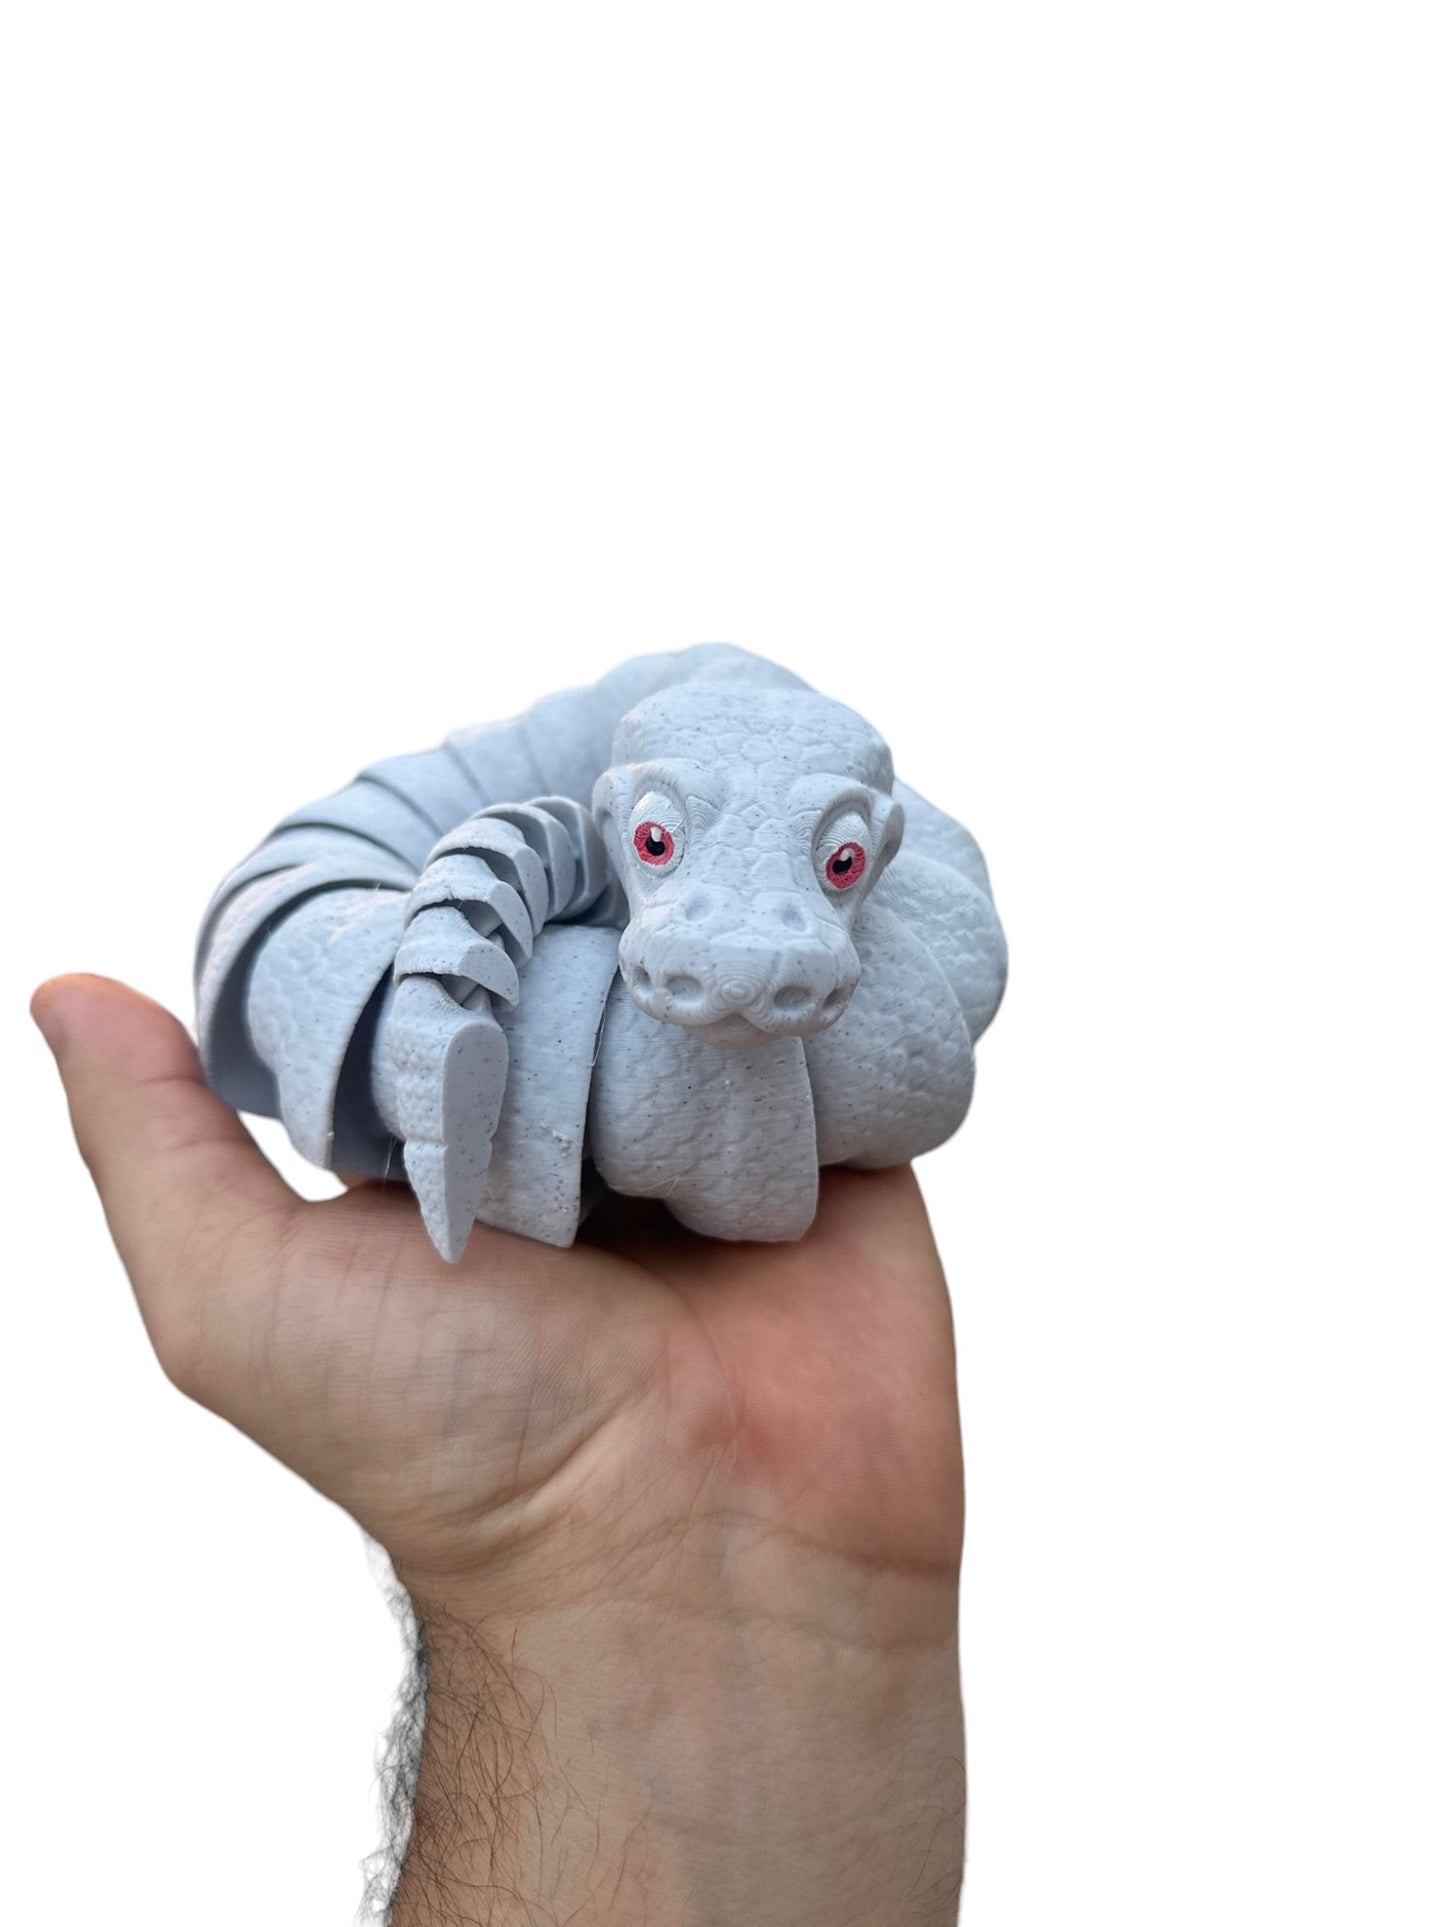 3D Printed Ball Python